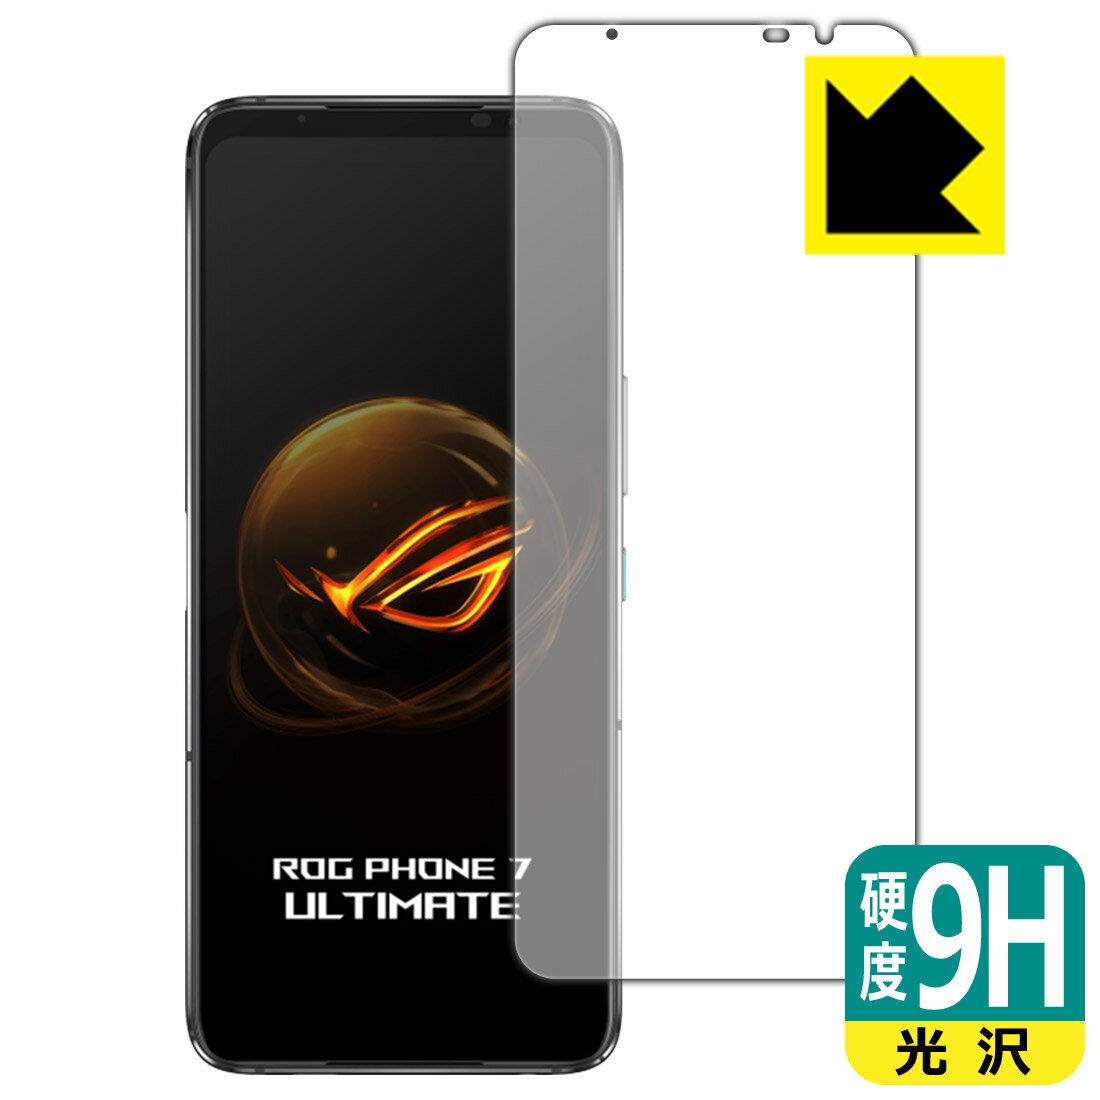 9H高硬度【光沢】保護フィルム ASUS ROG Phone 7 / ROG Phone 7 Ultimate 画面用 【指紋認証対応】 日本製 自社製造直販